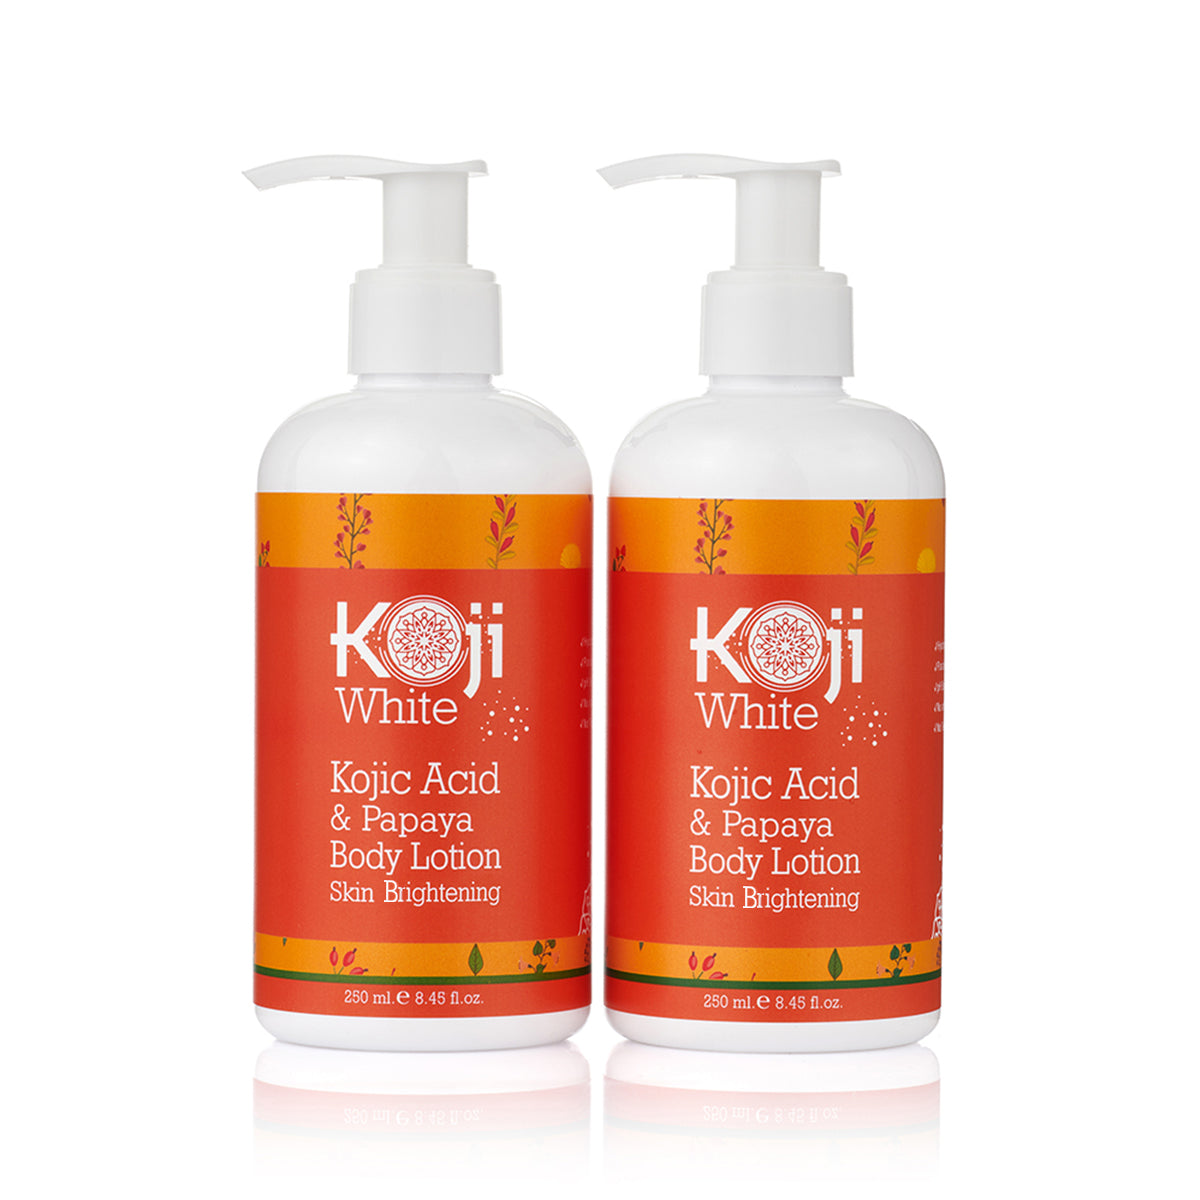 Kojic Acid & Papaya Skin Brightening Body Lotion 2 Bottles